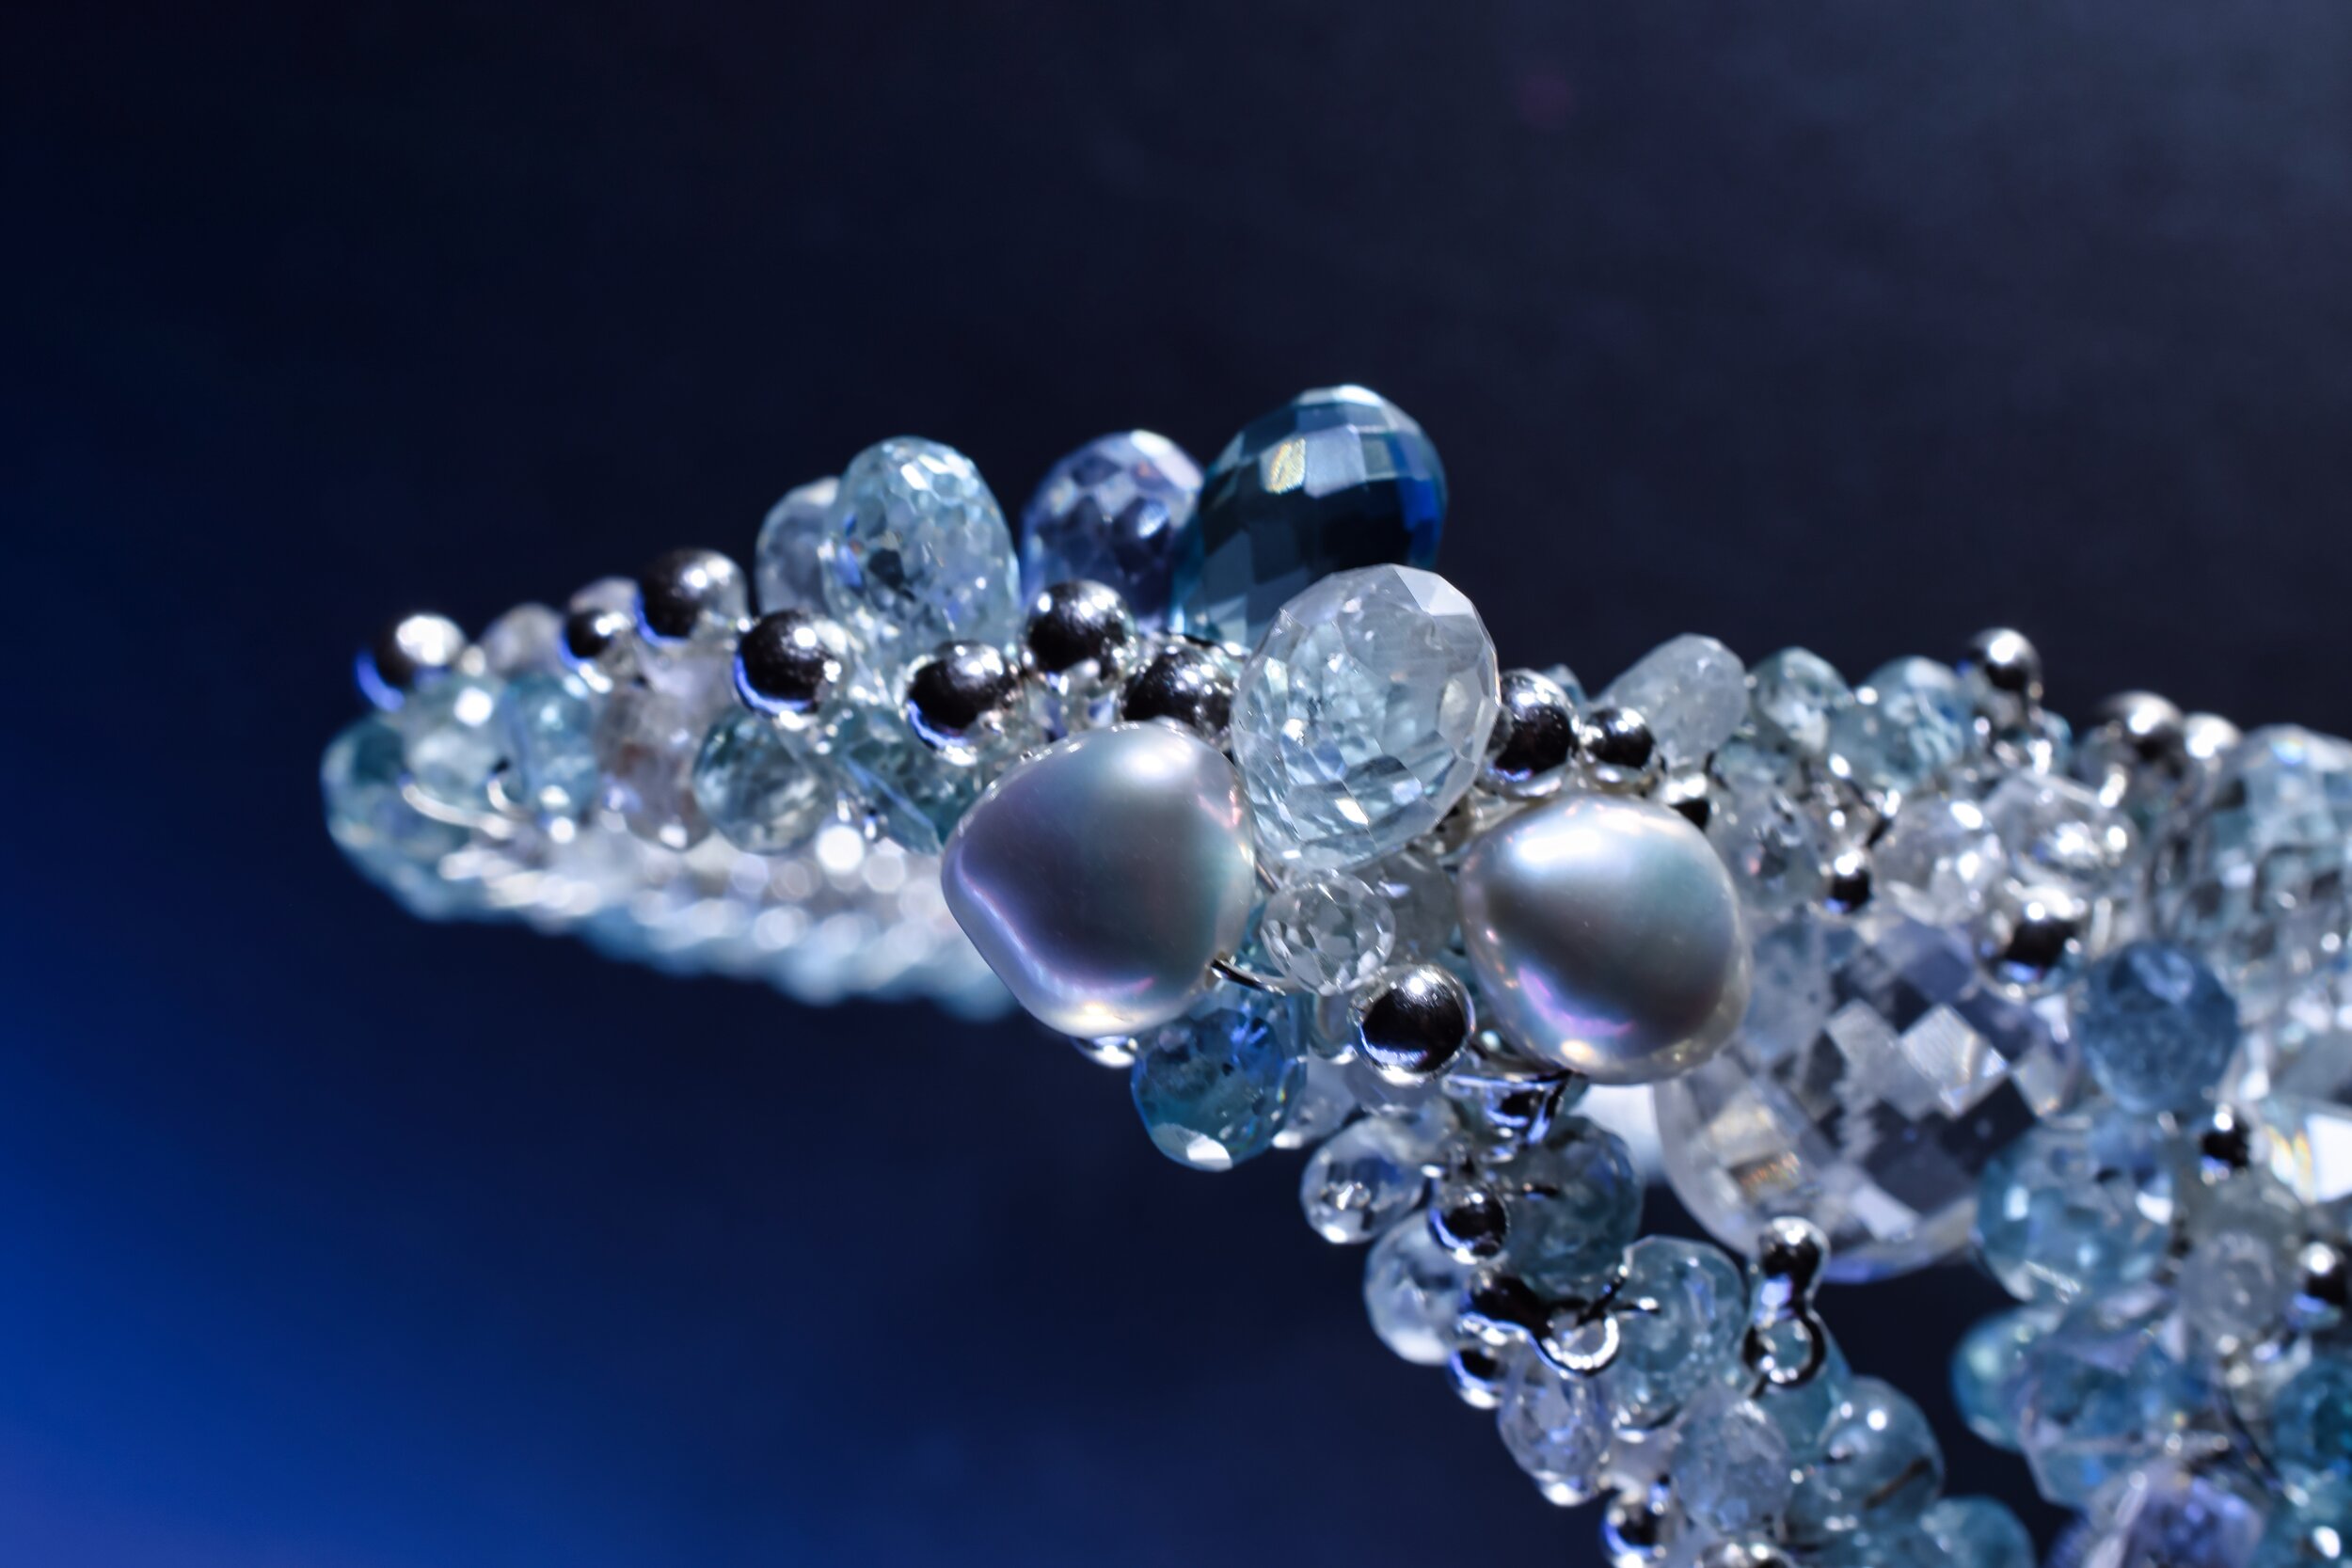 Gemstone Encrusted Bracelet with Aquamarine and Zircon